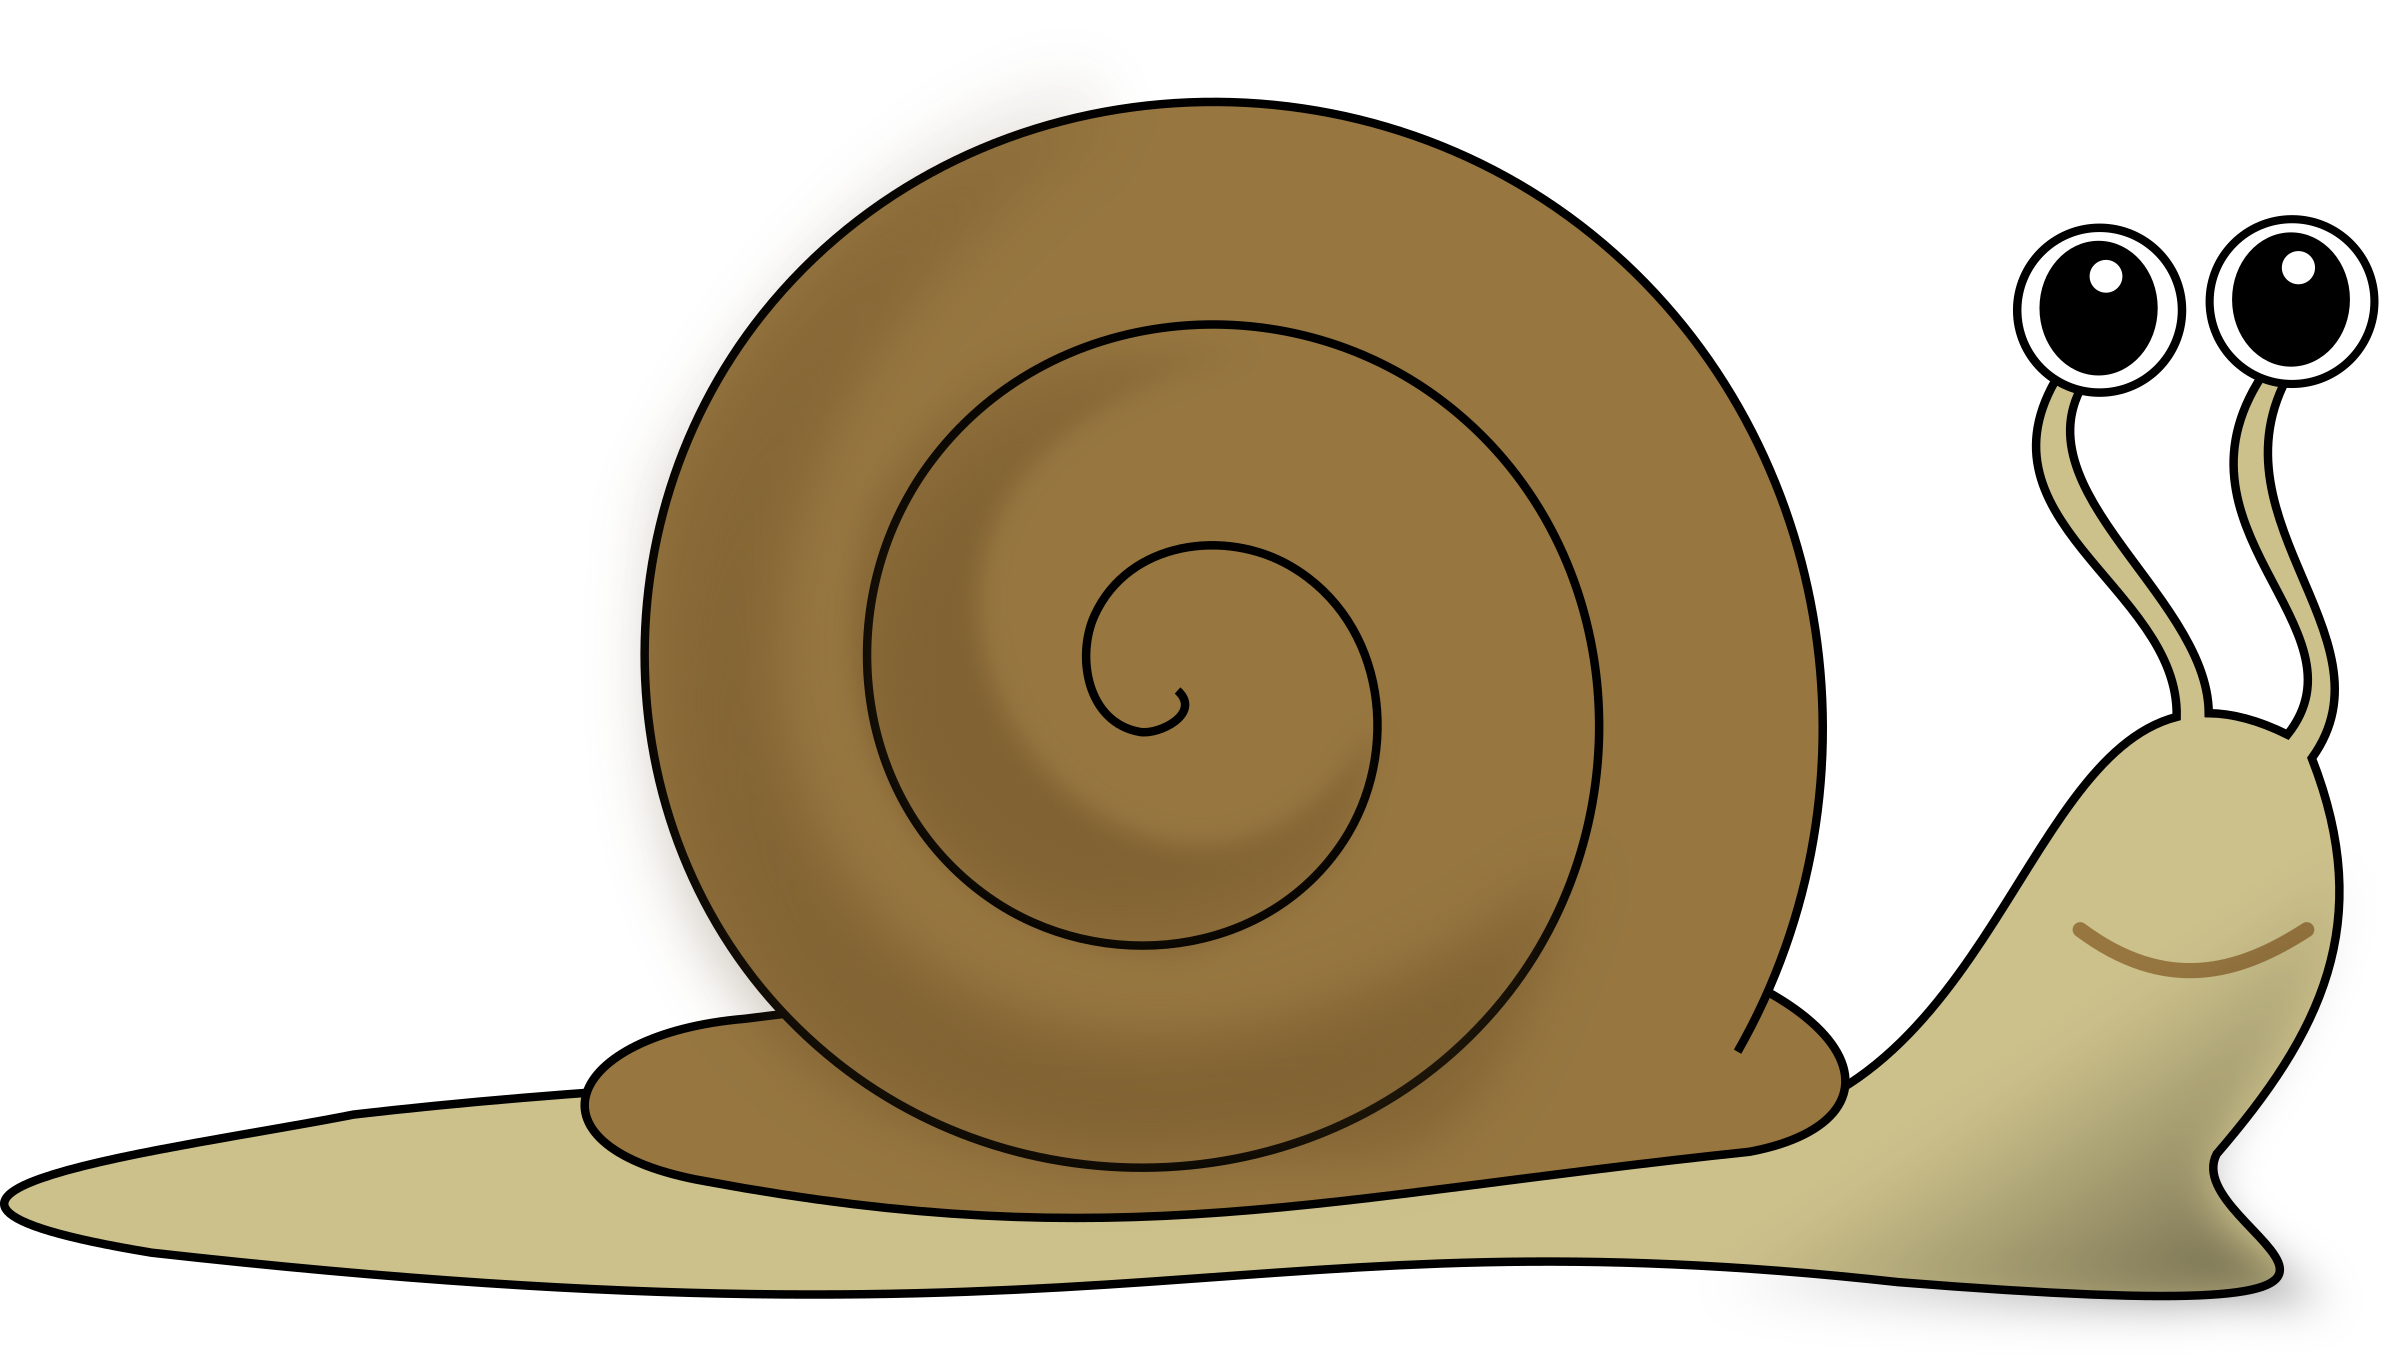 Snail Clip Art